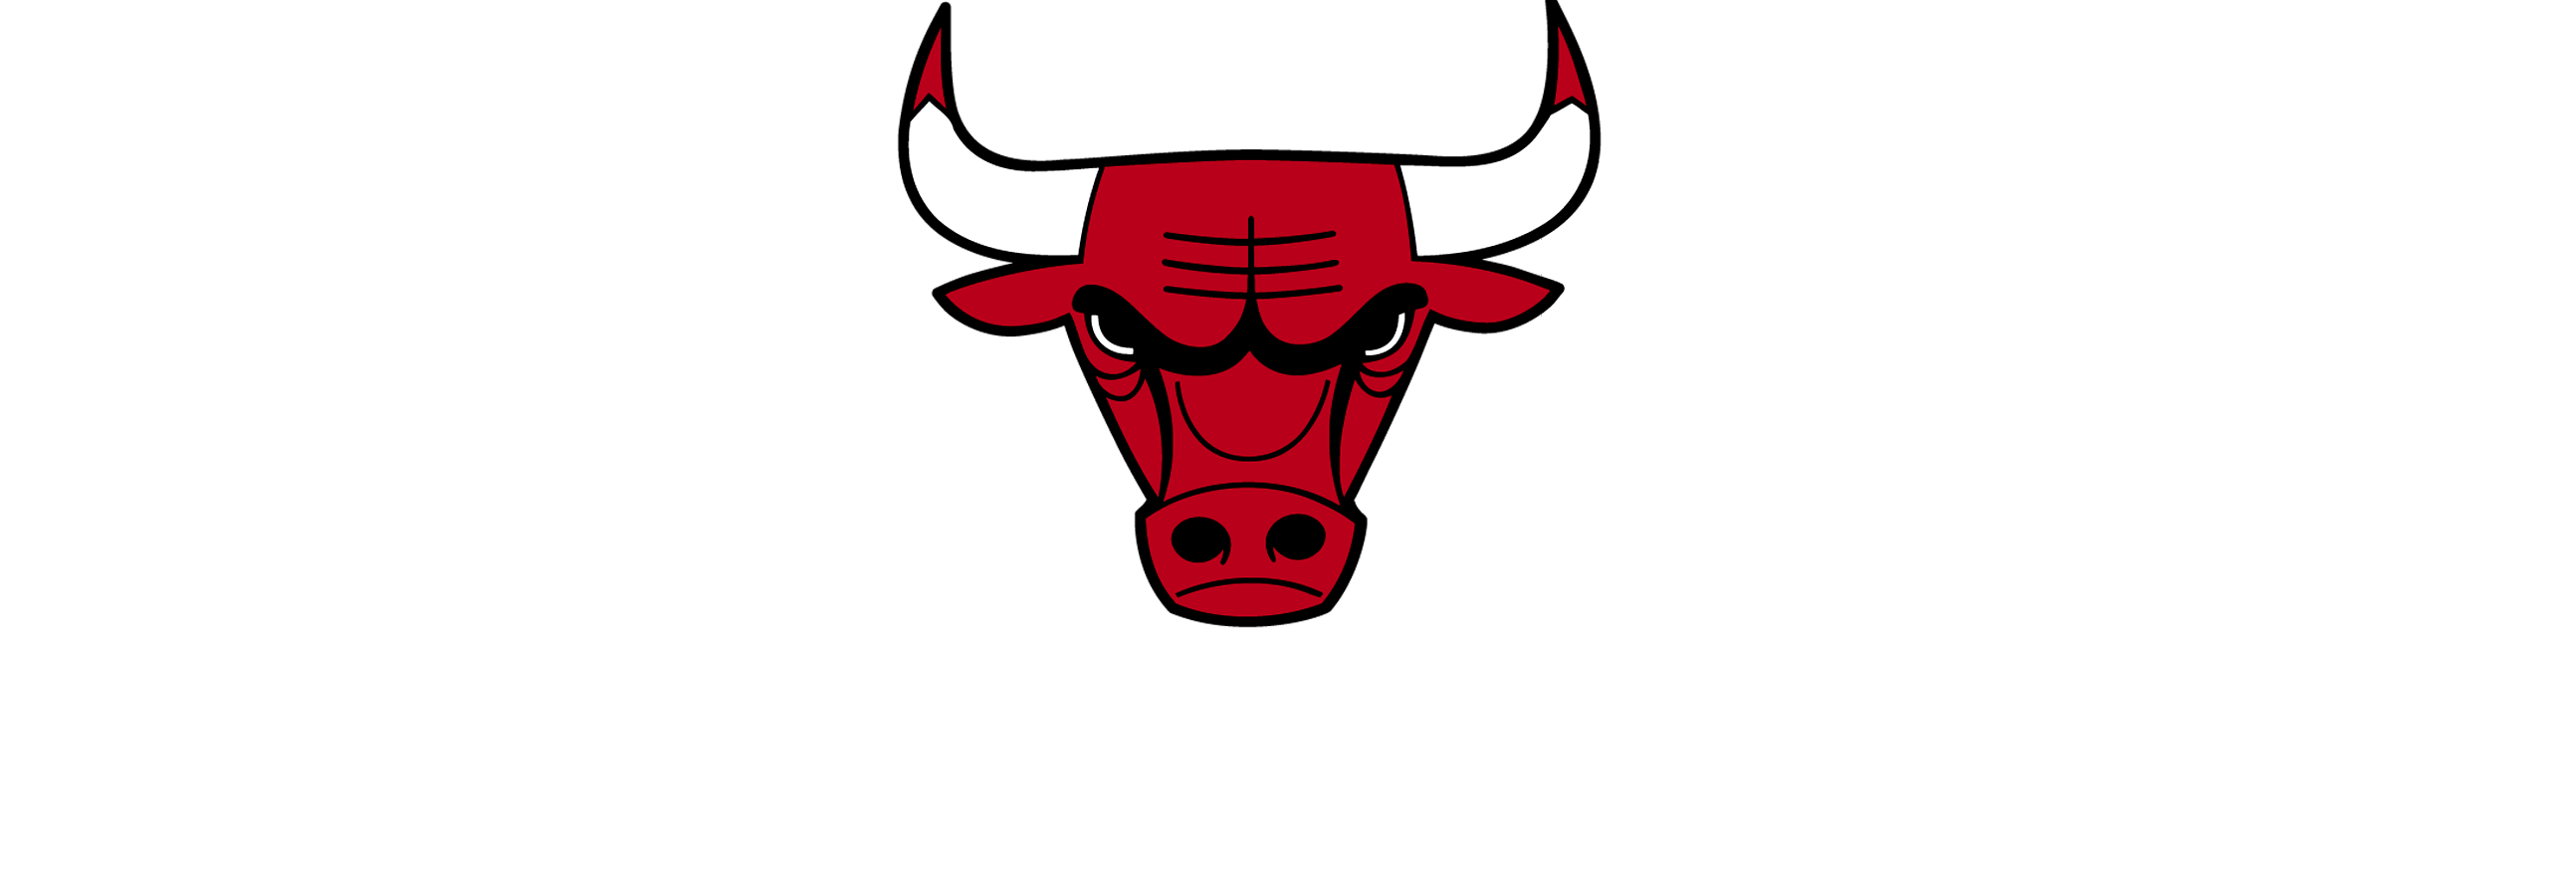 Chicago Bulls Logo Drawing